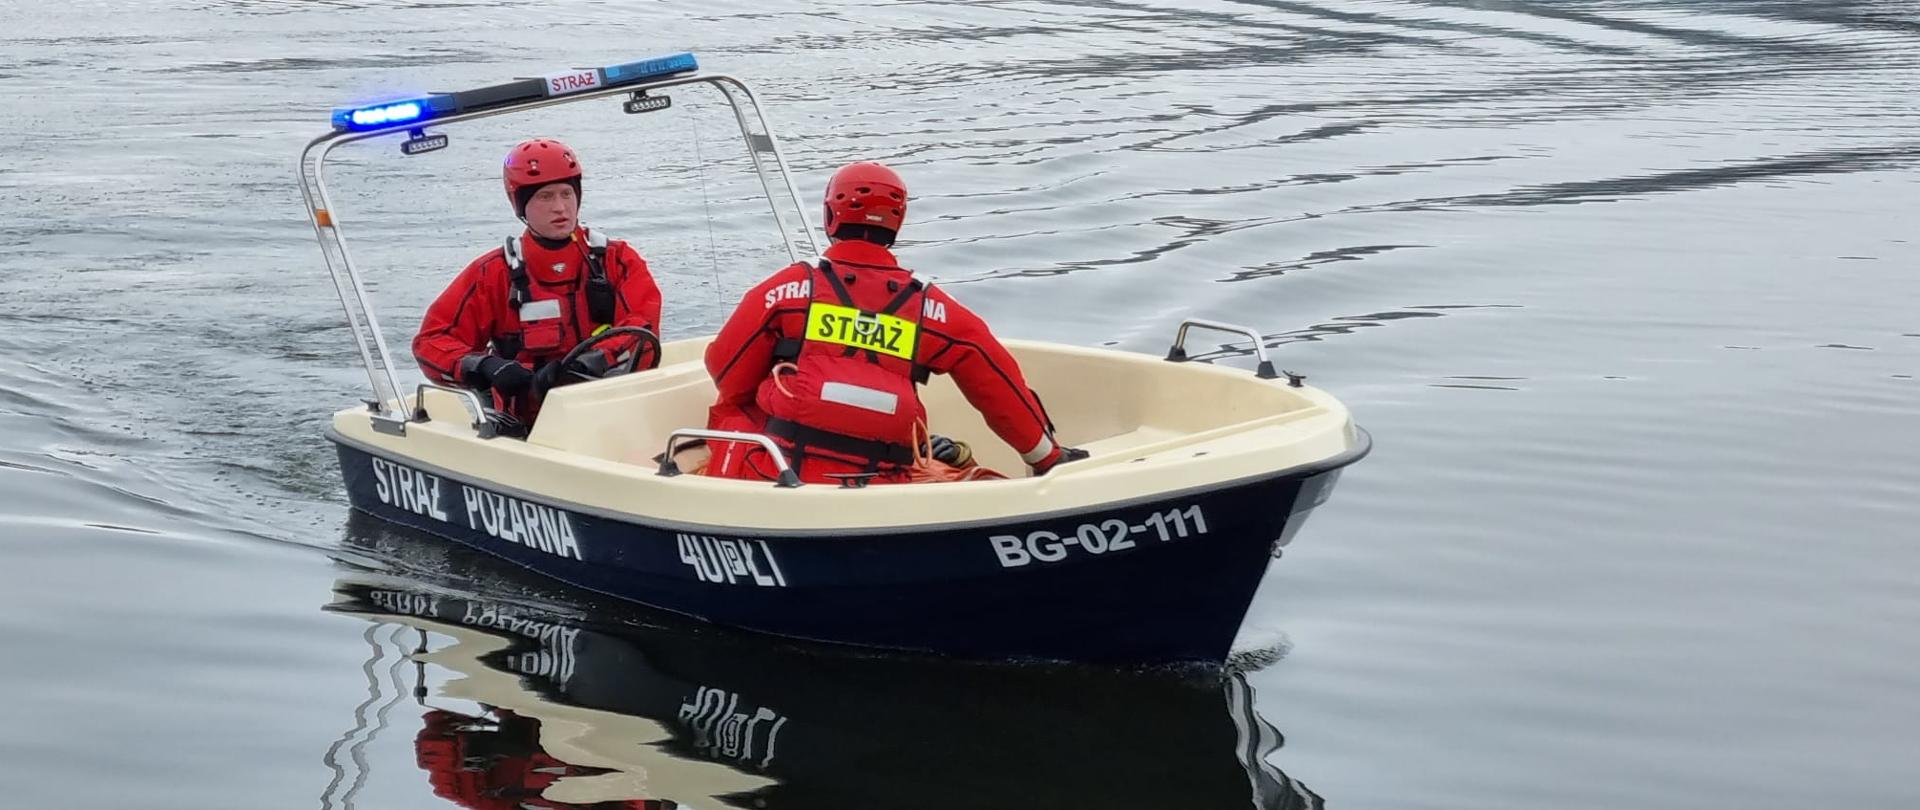 Zdjęcie przedstawia dwóch strażaków ćwiczących na jeziorze ratownictwo wodne – ratowanie poszkodowanego.
W tle jezioro.
